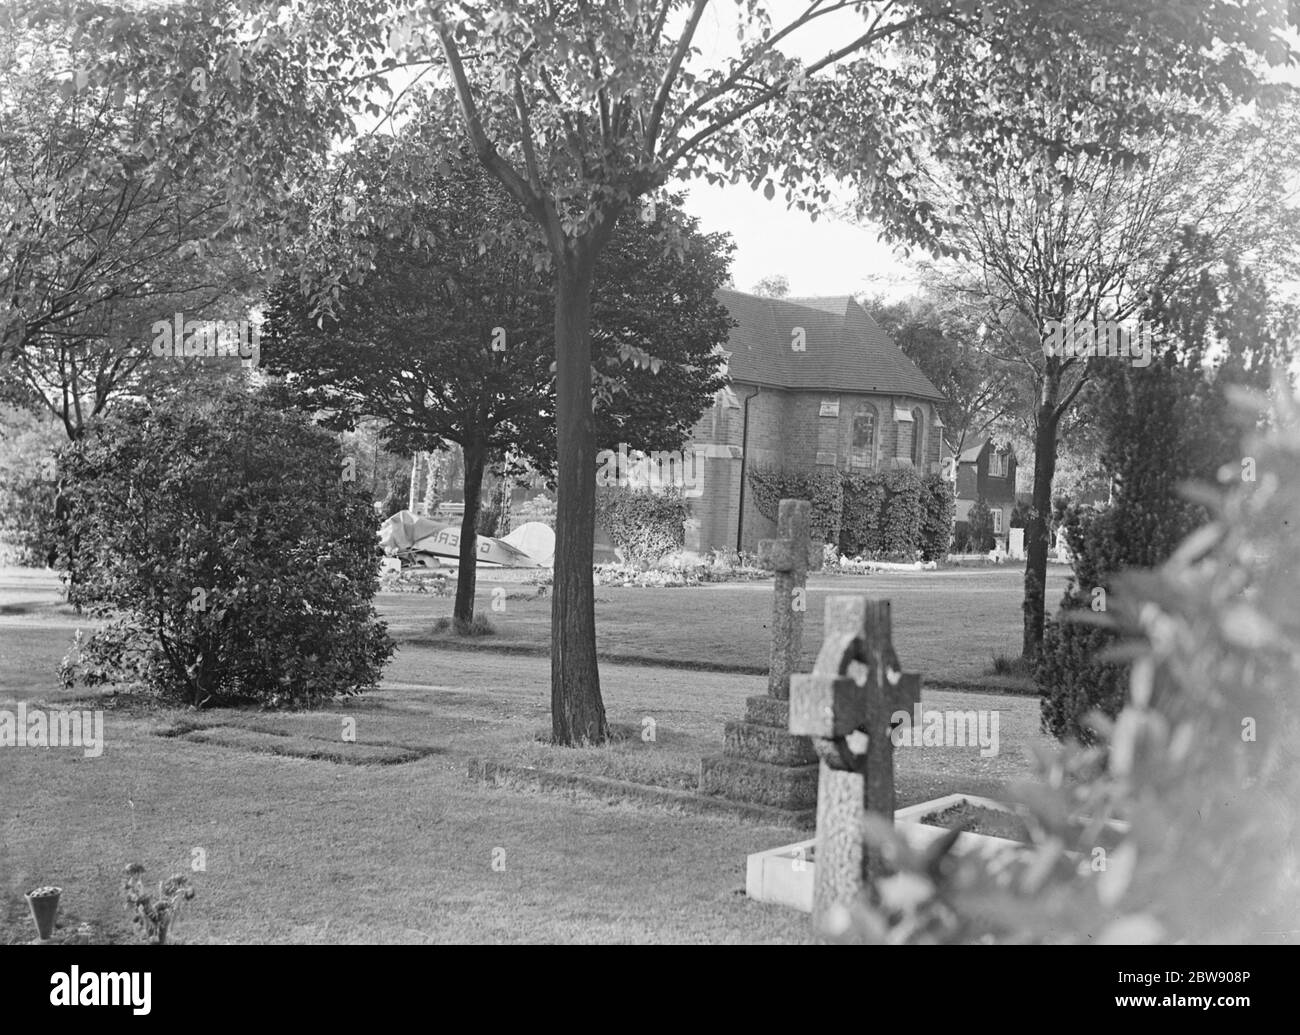 Alfred Stanley Bacon wurde sofort getötet, als das Flugzeug, das er flog, in Bromley Hill Cemetery in der Nähe von Catford, London abgestürzt war. Der Flieger war an Bord einer Broughton - Blayney Brawney ' G-AERF ', auf einem Flug von Hanworth zum Ramsgate Flughafen. Foto zeigt den Ort des Absturzes. Juni 1937 Stockfoto